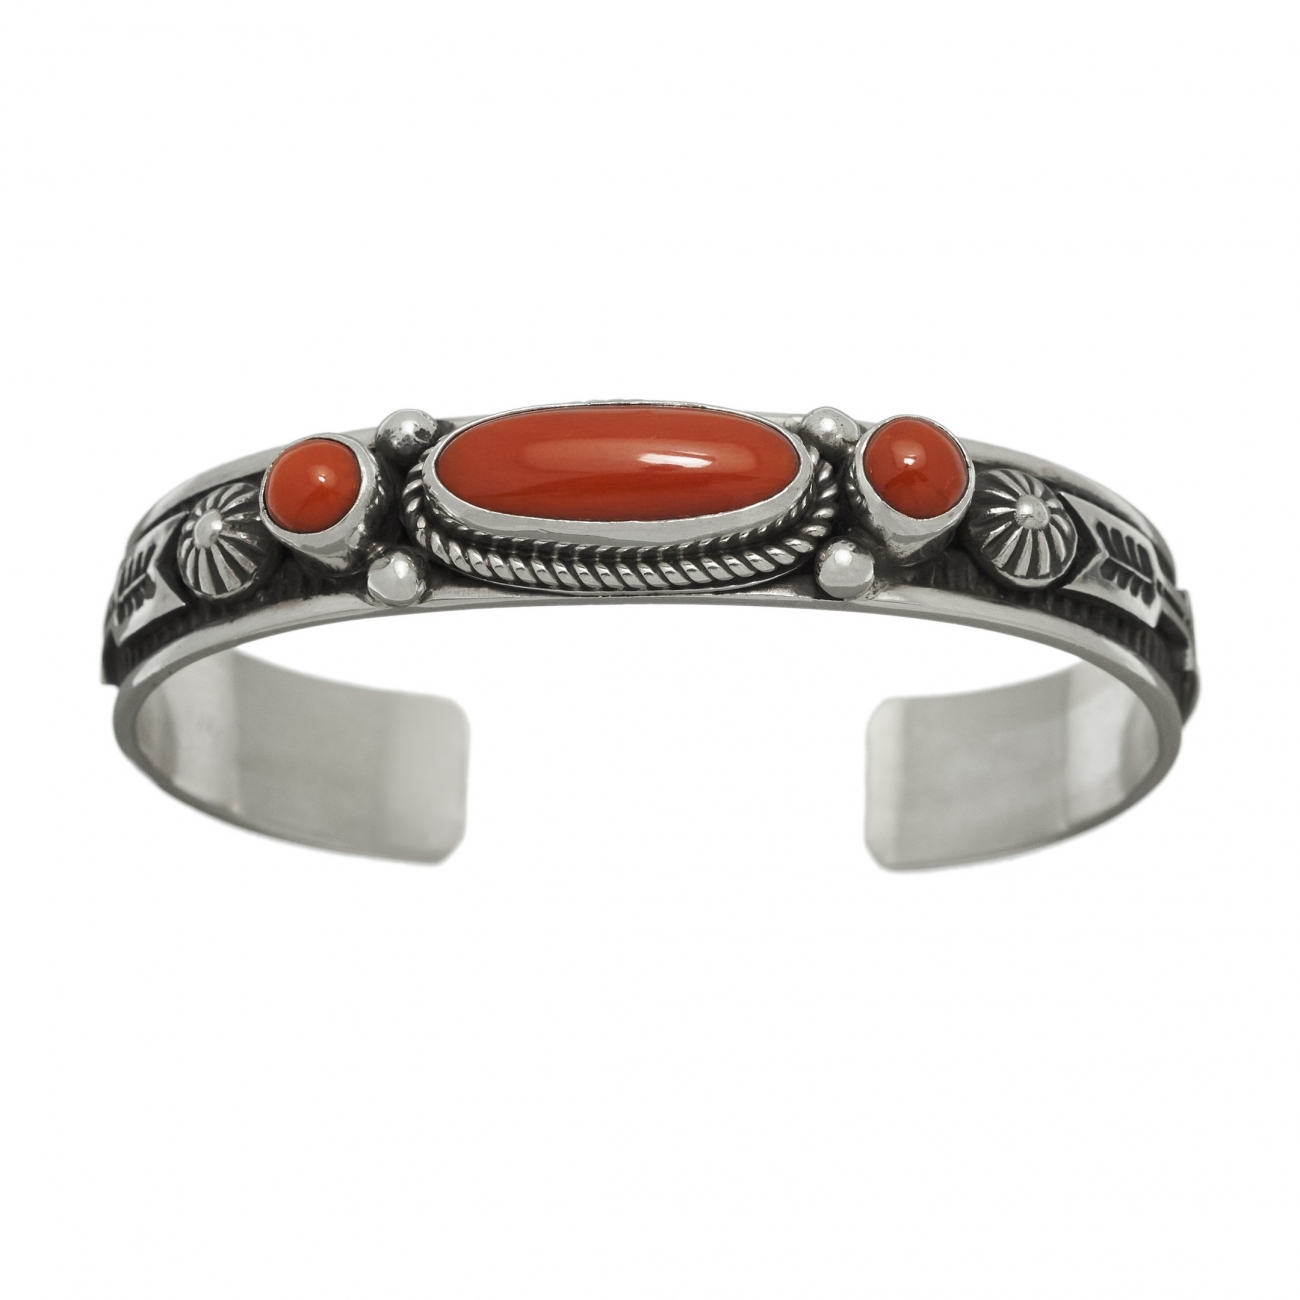 Bracelet Navajo pour femme BR605 en corail et argent - Harpo Paris